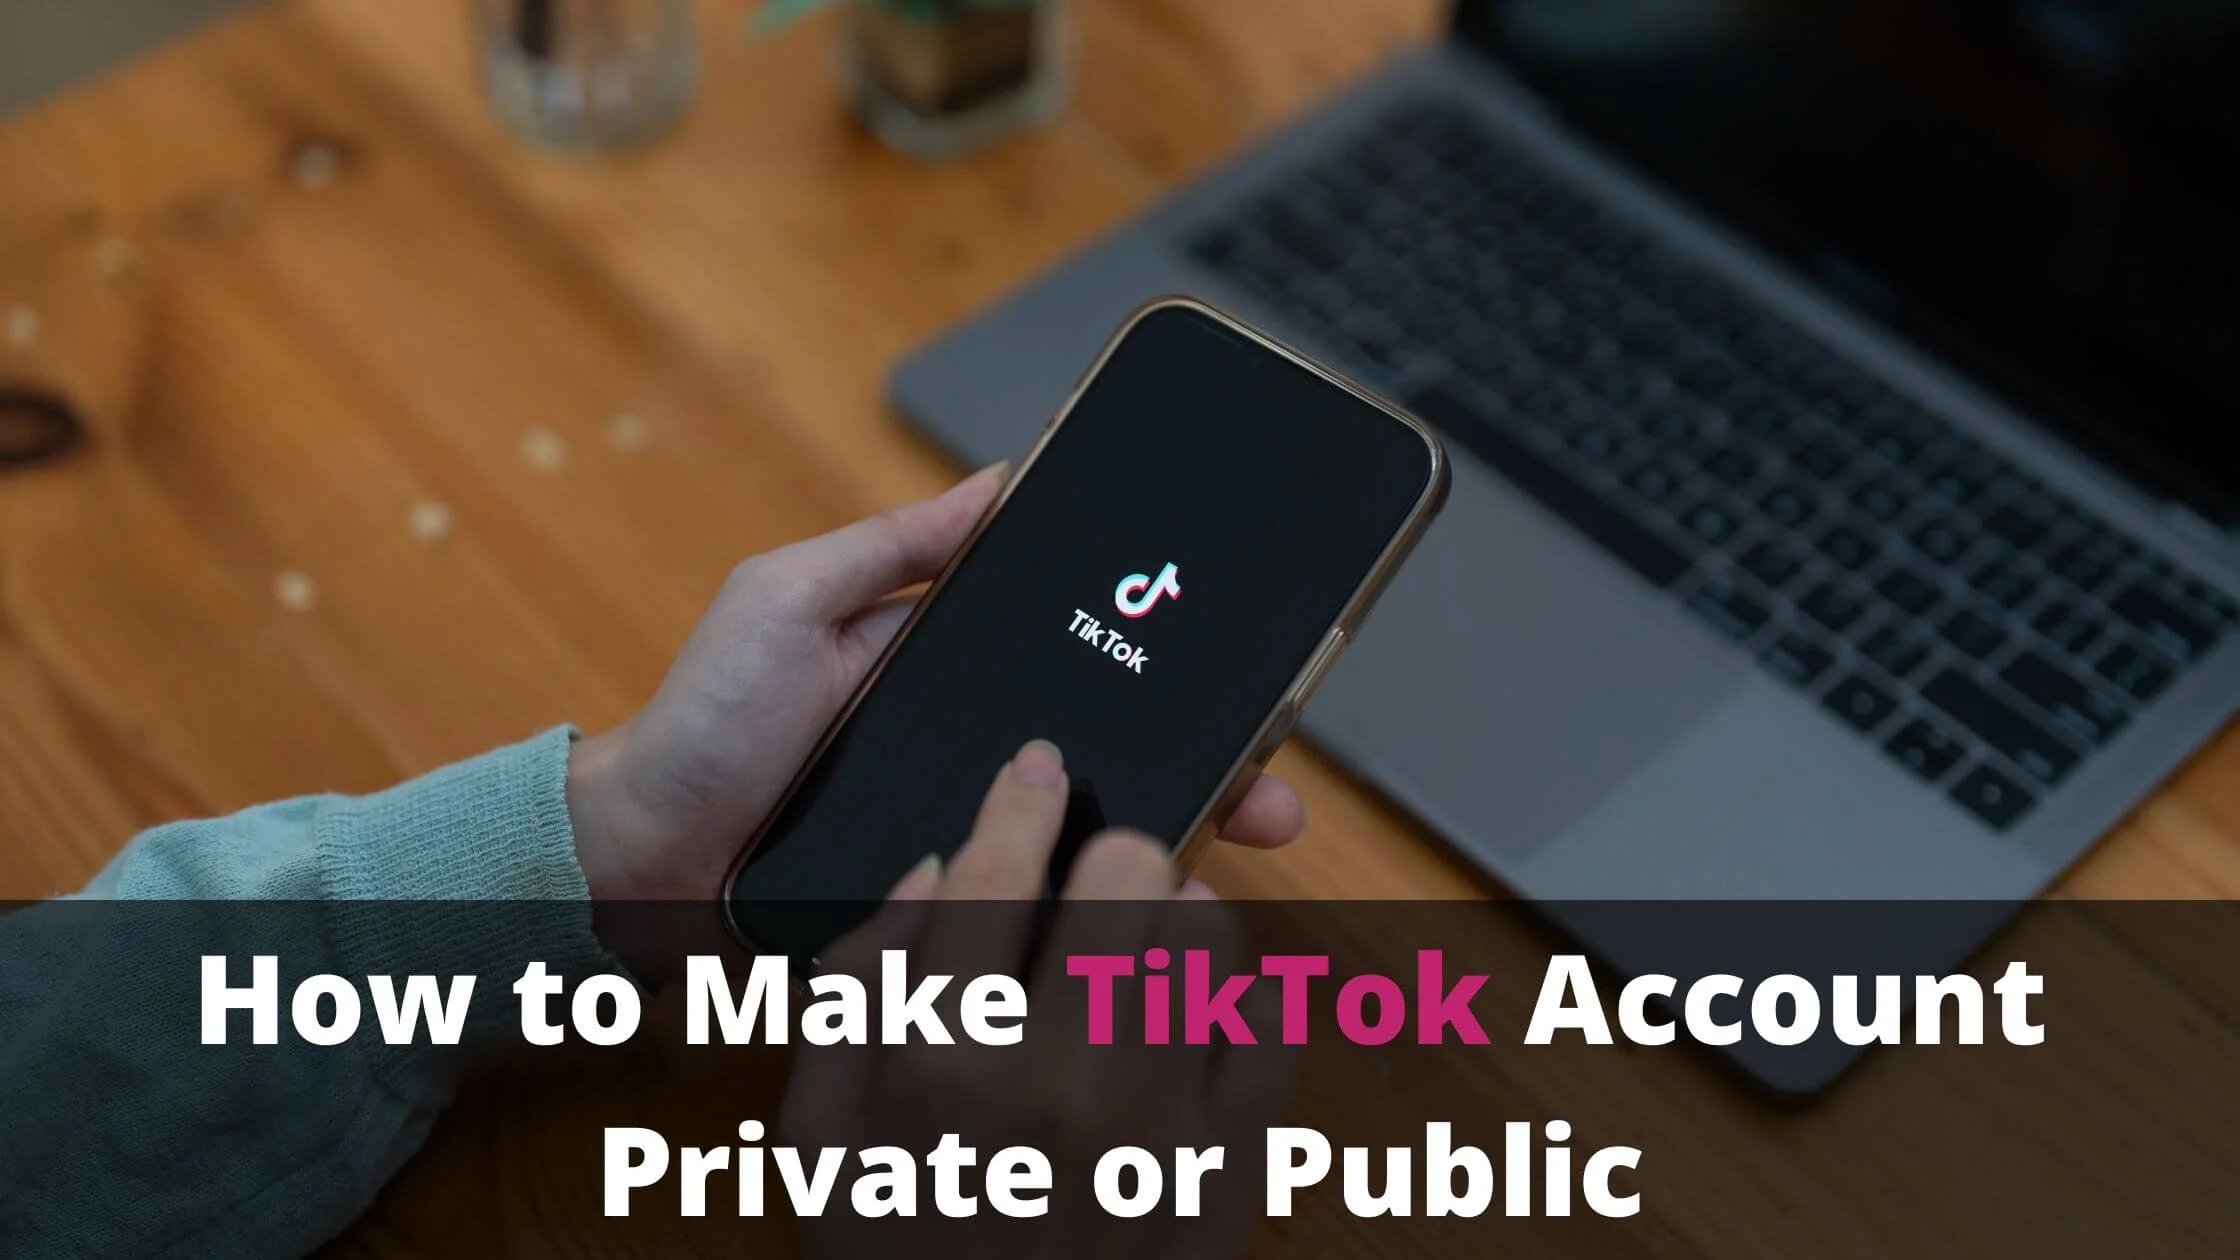 Make TikTok Account Private or Public